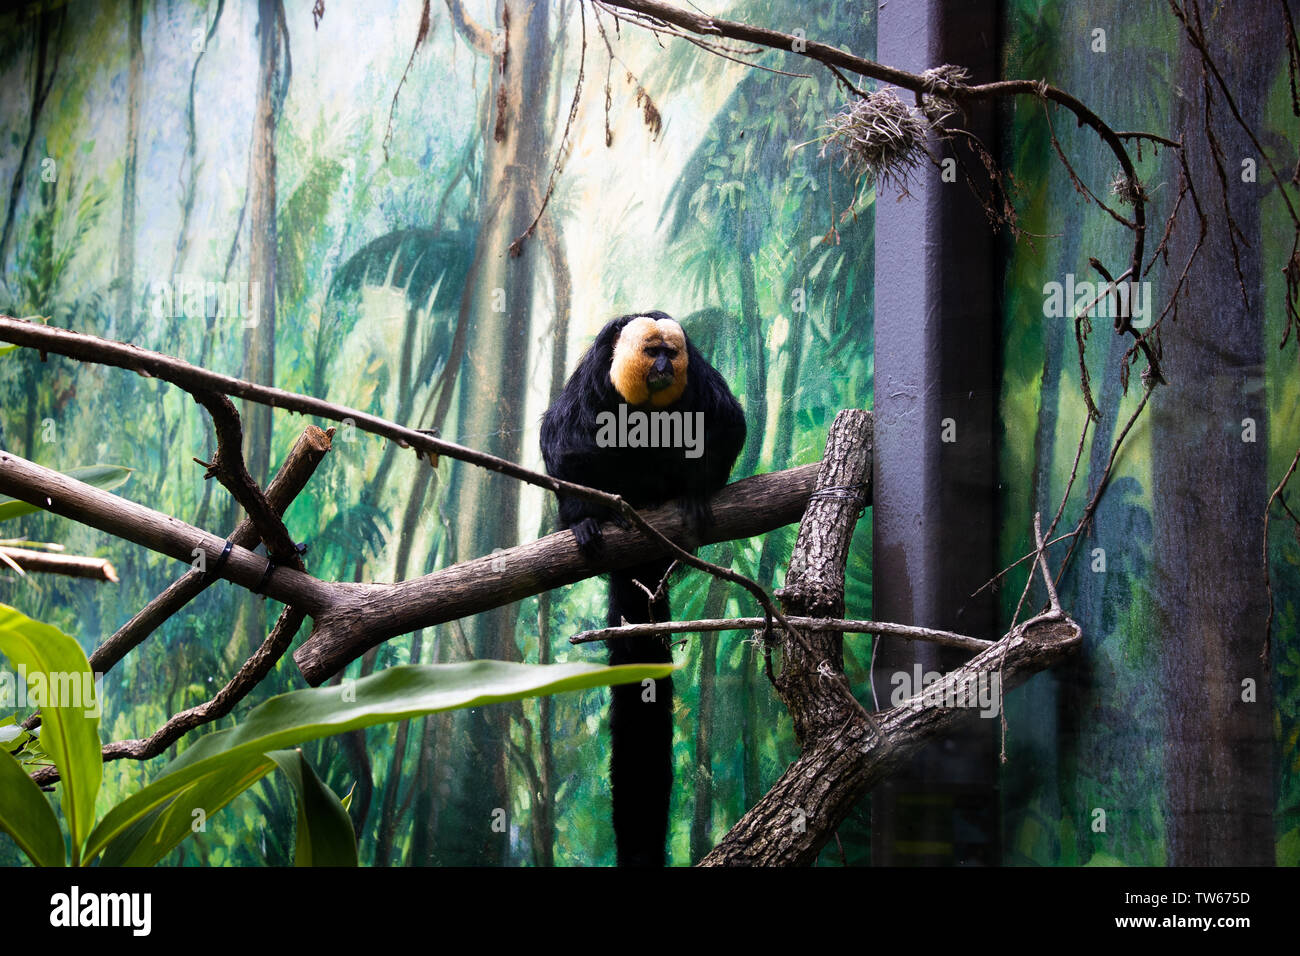 A Monkey at the Houston Zoo Stock Photo